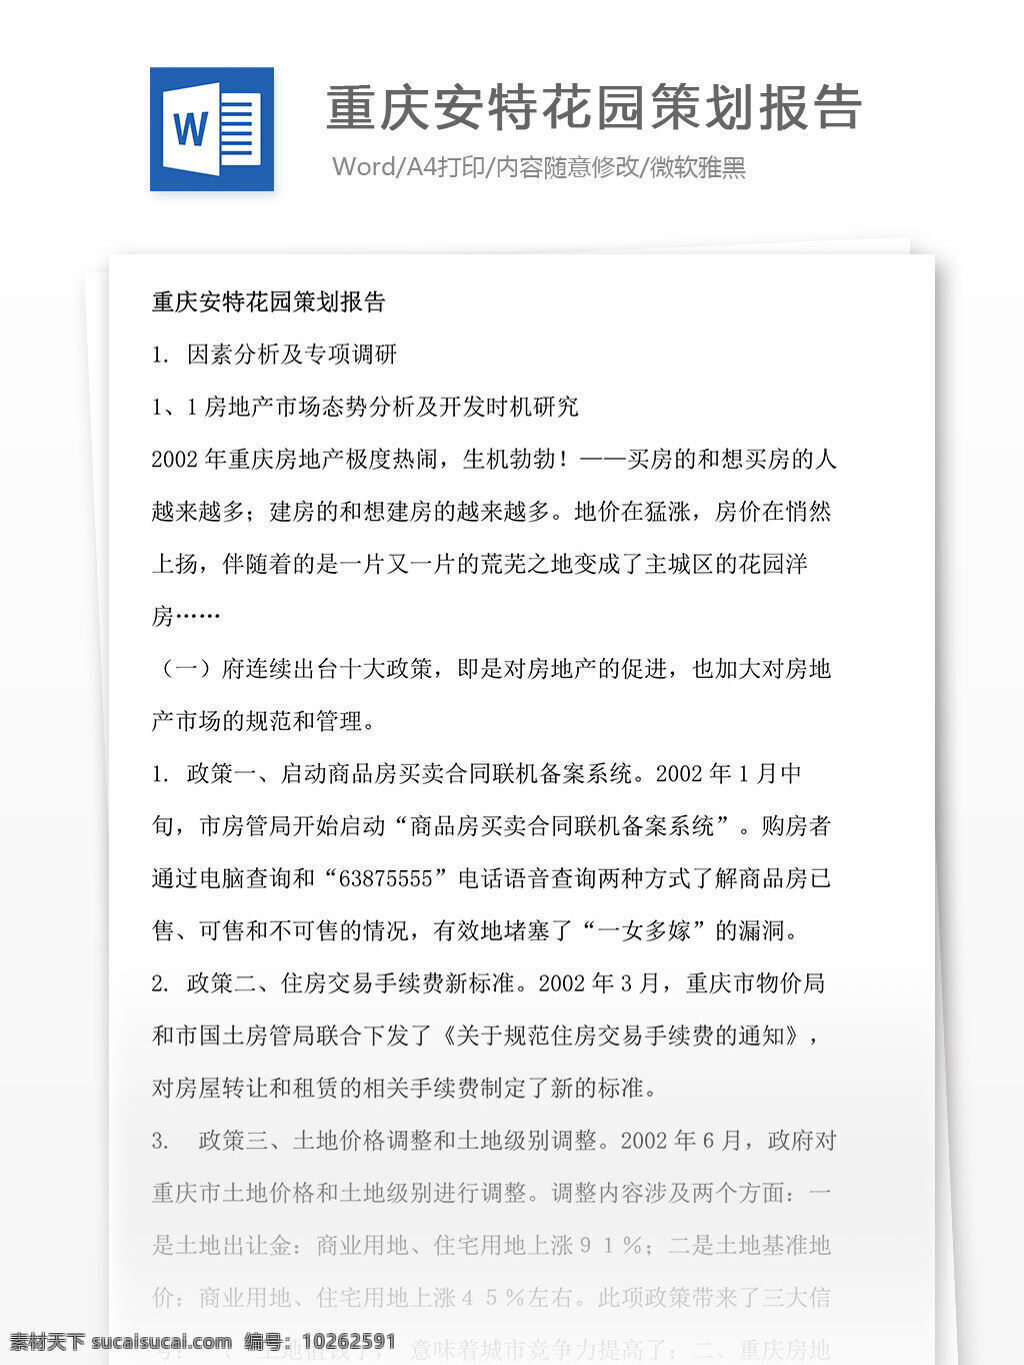 重庆 安特 花园 策划 报告 花园策划 策划报告 文档 word 文档模板 广告 文案 广告策划